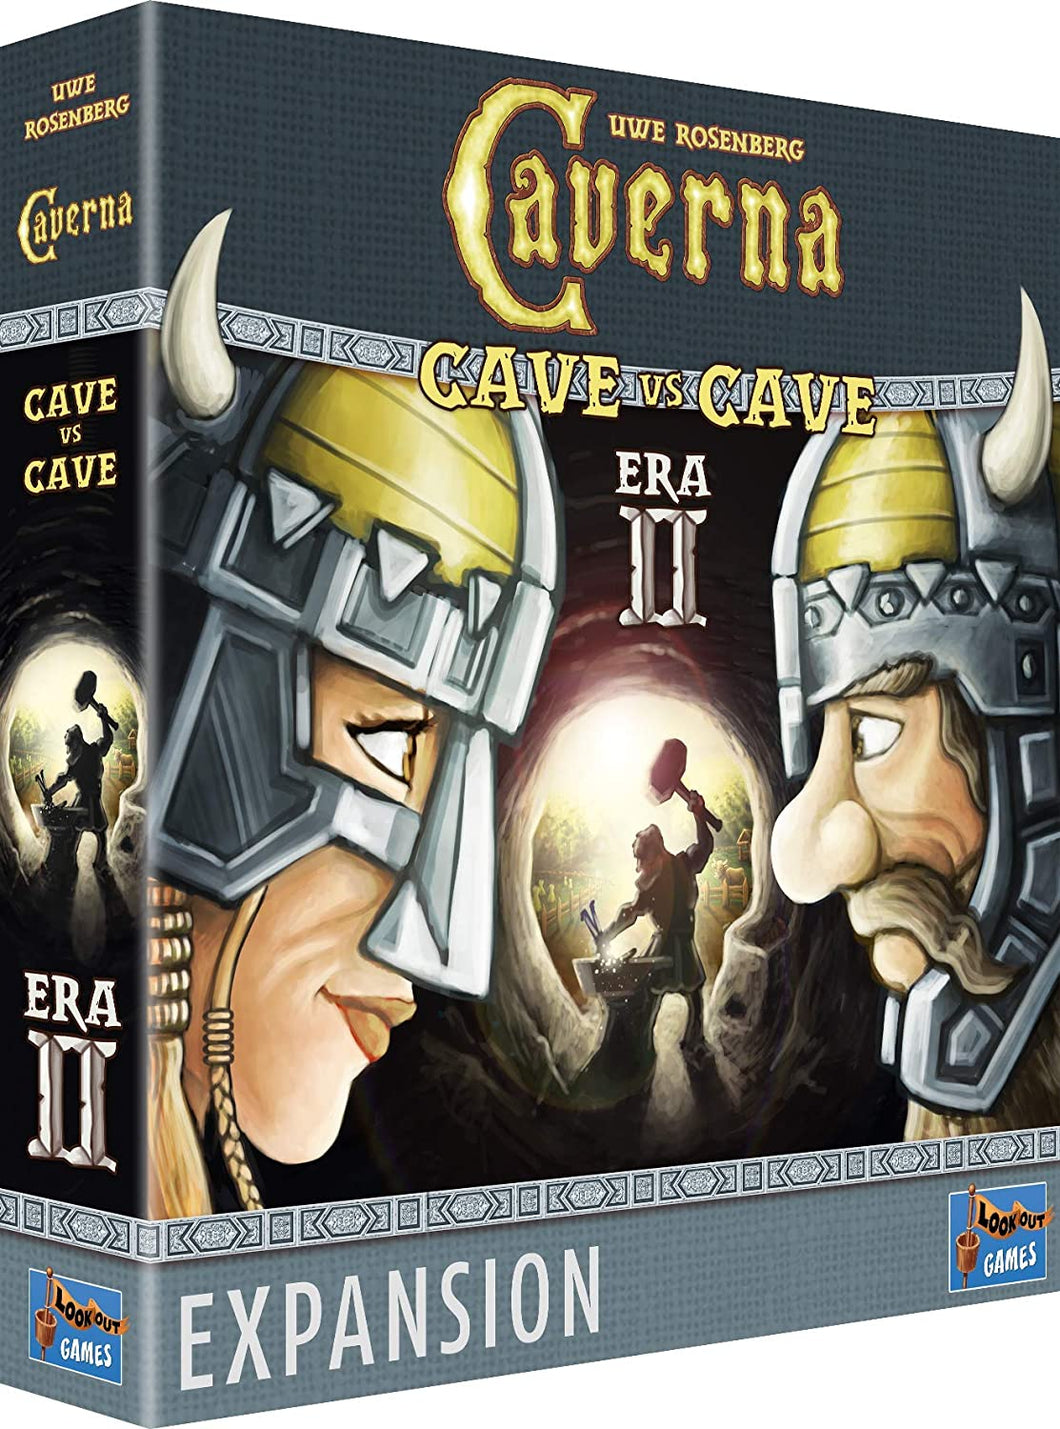 Caverna: Cave Vs Cave Era Ii